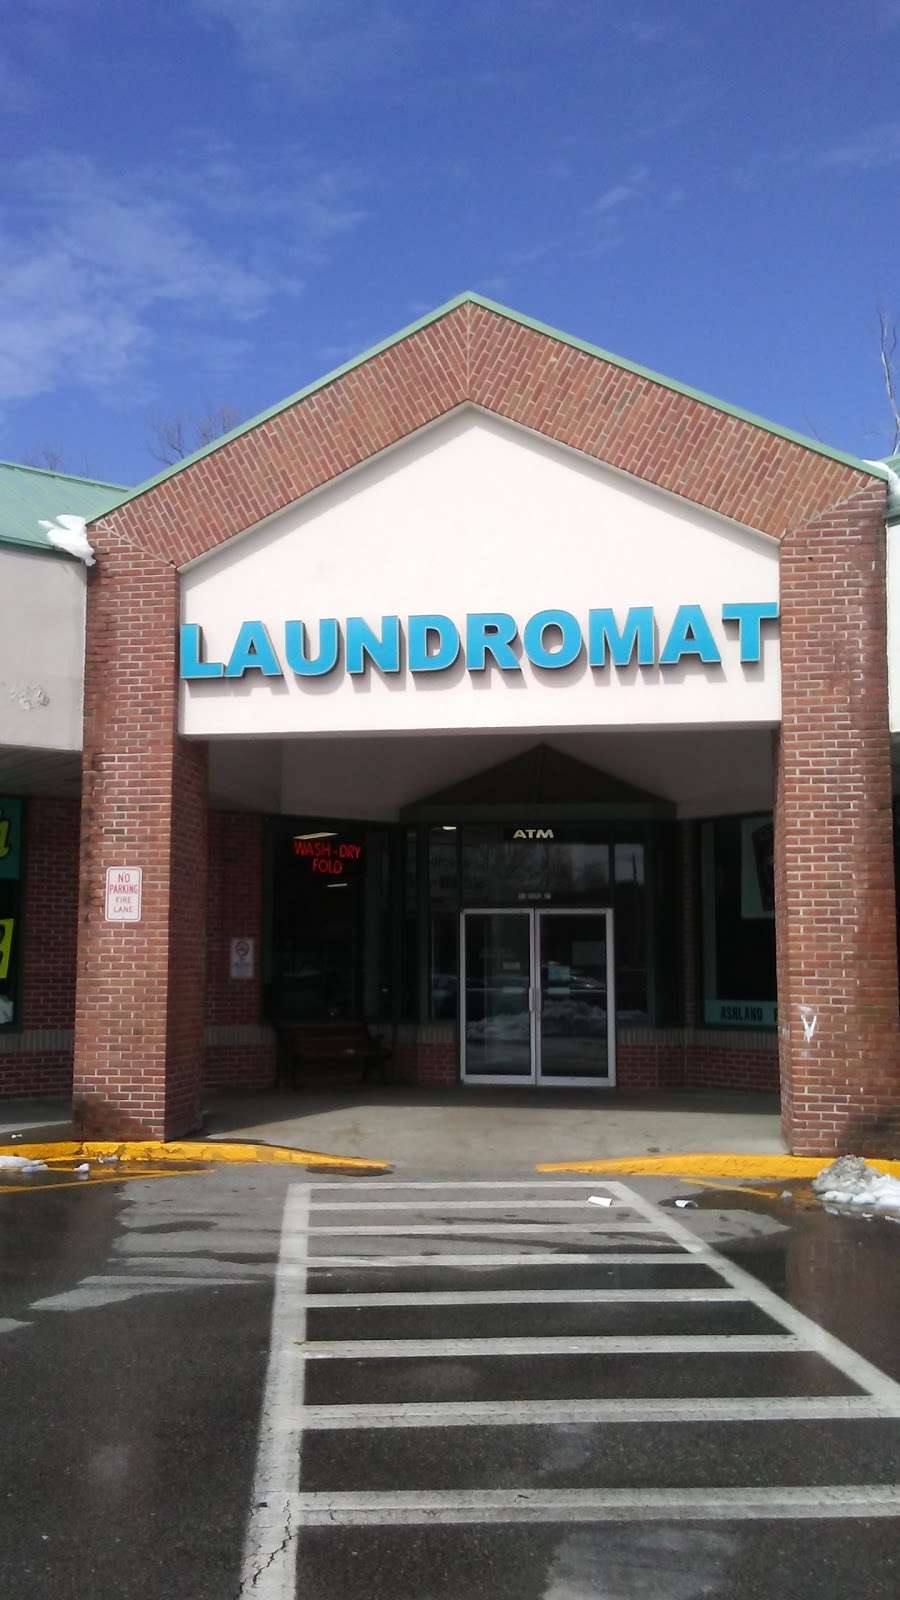 SupaWash Laundry Center | 31 Pond St Unit 1, Ashland, MA 01721, USA | Phone: (508) 620-1109